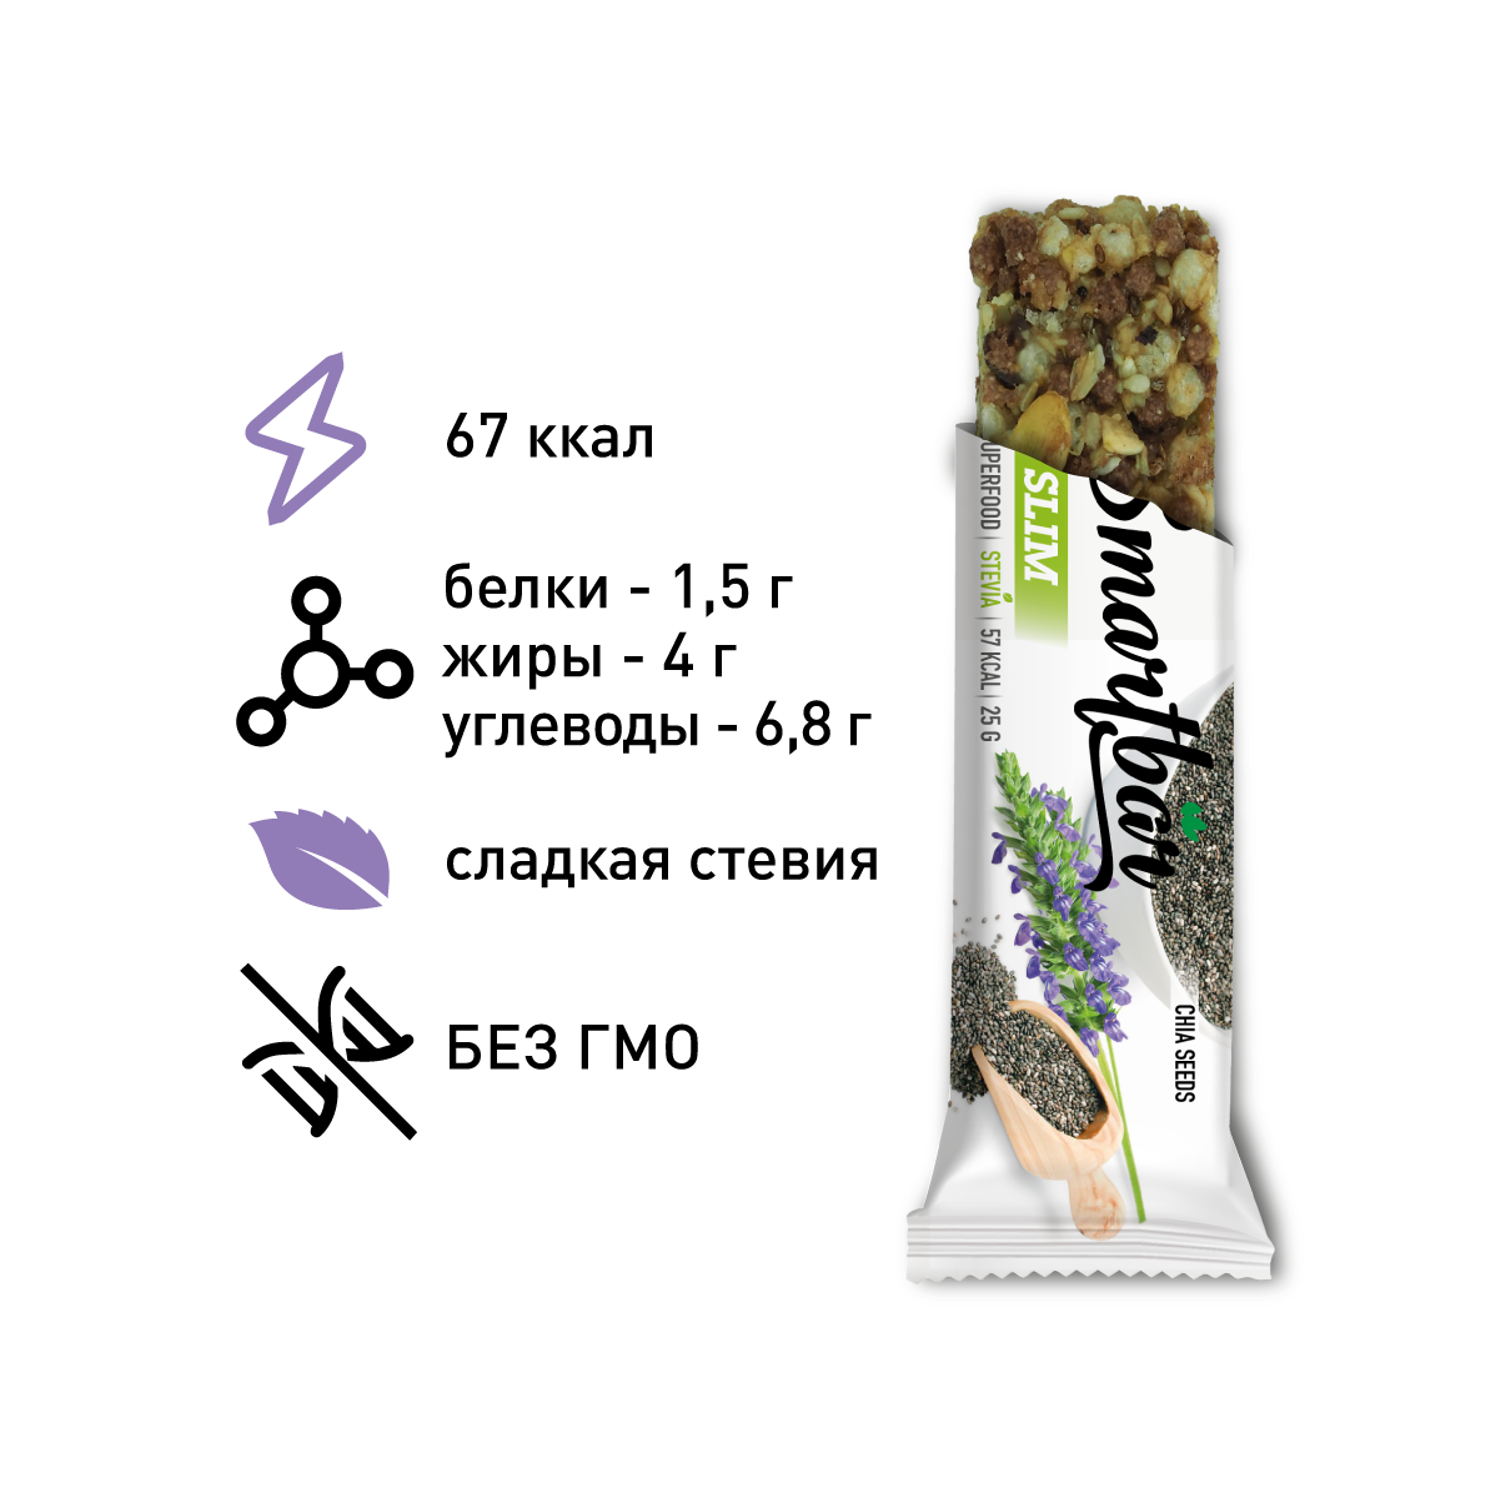 Батончик Smartbar Slim мюсли с семенами льна и кунжута 6 шт. х 25 г - фото 3